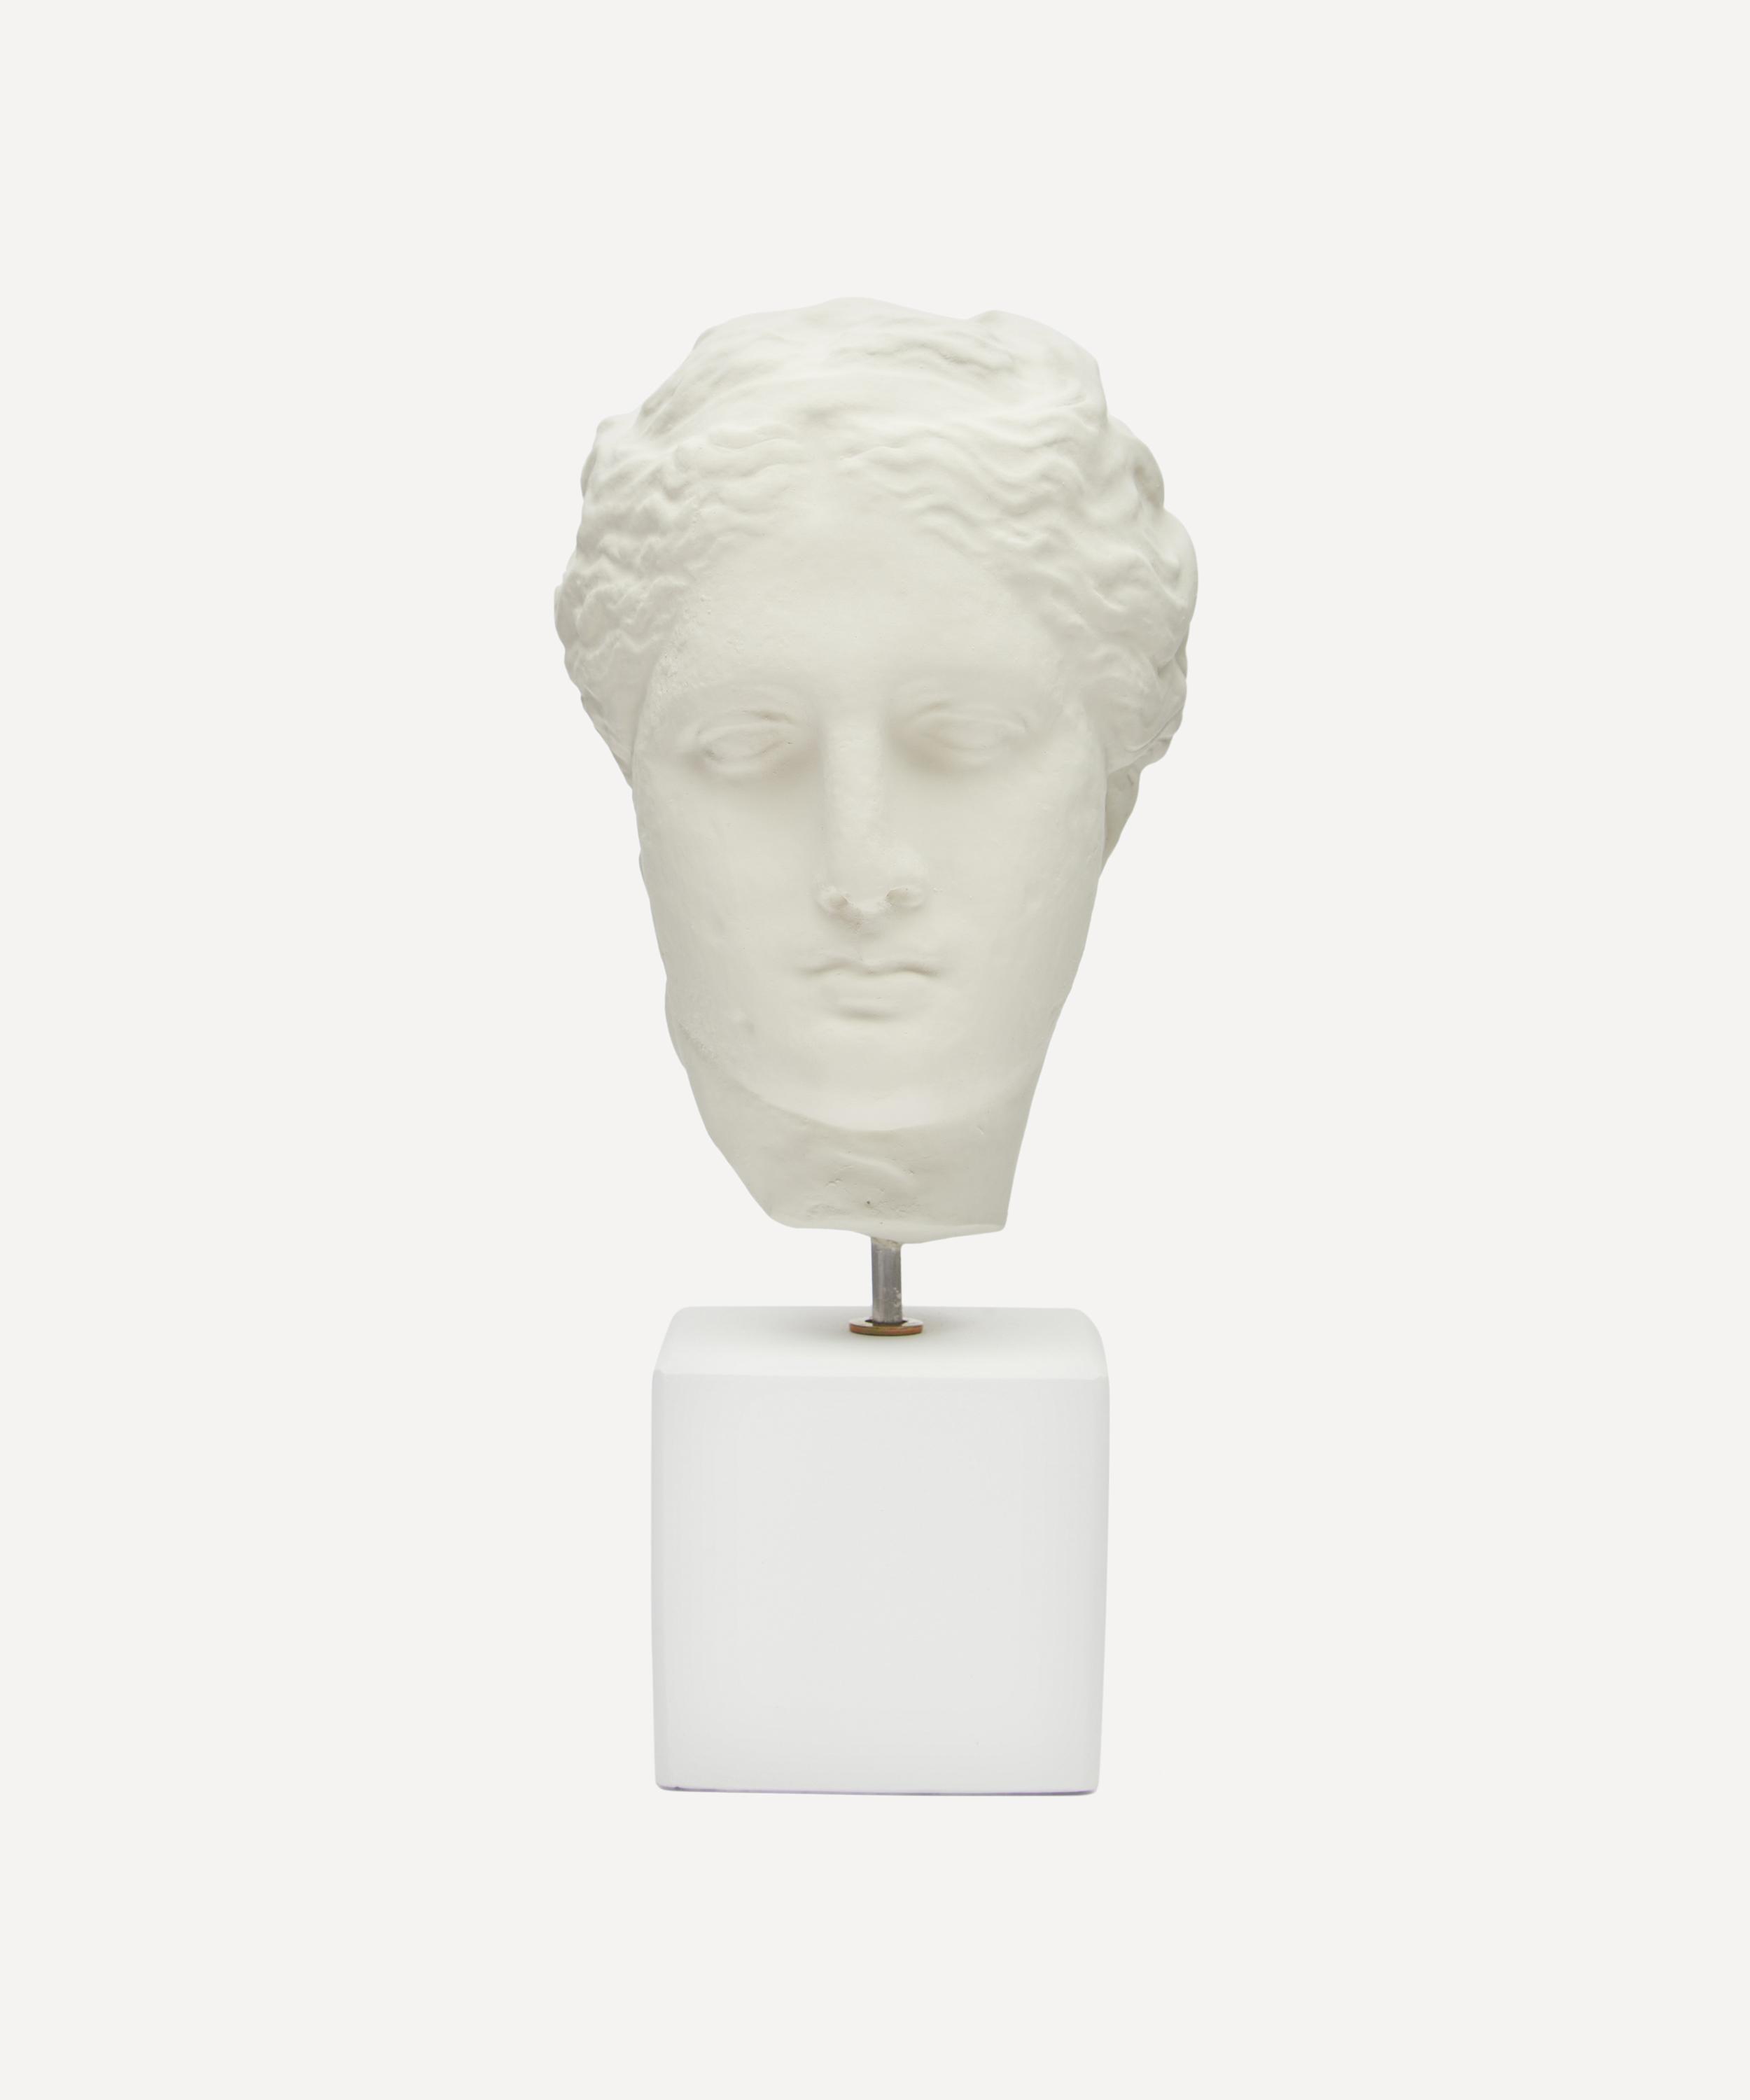 SOPHIA MEDIUM HEAD OF HYGEIA,000643354